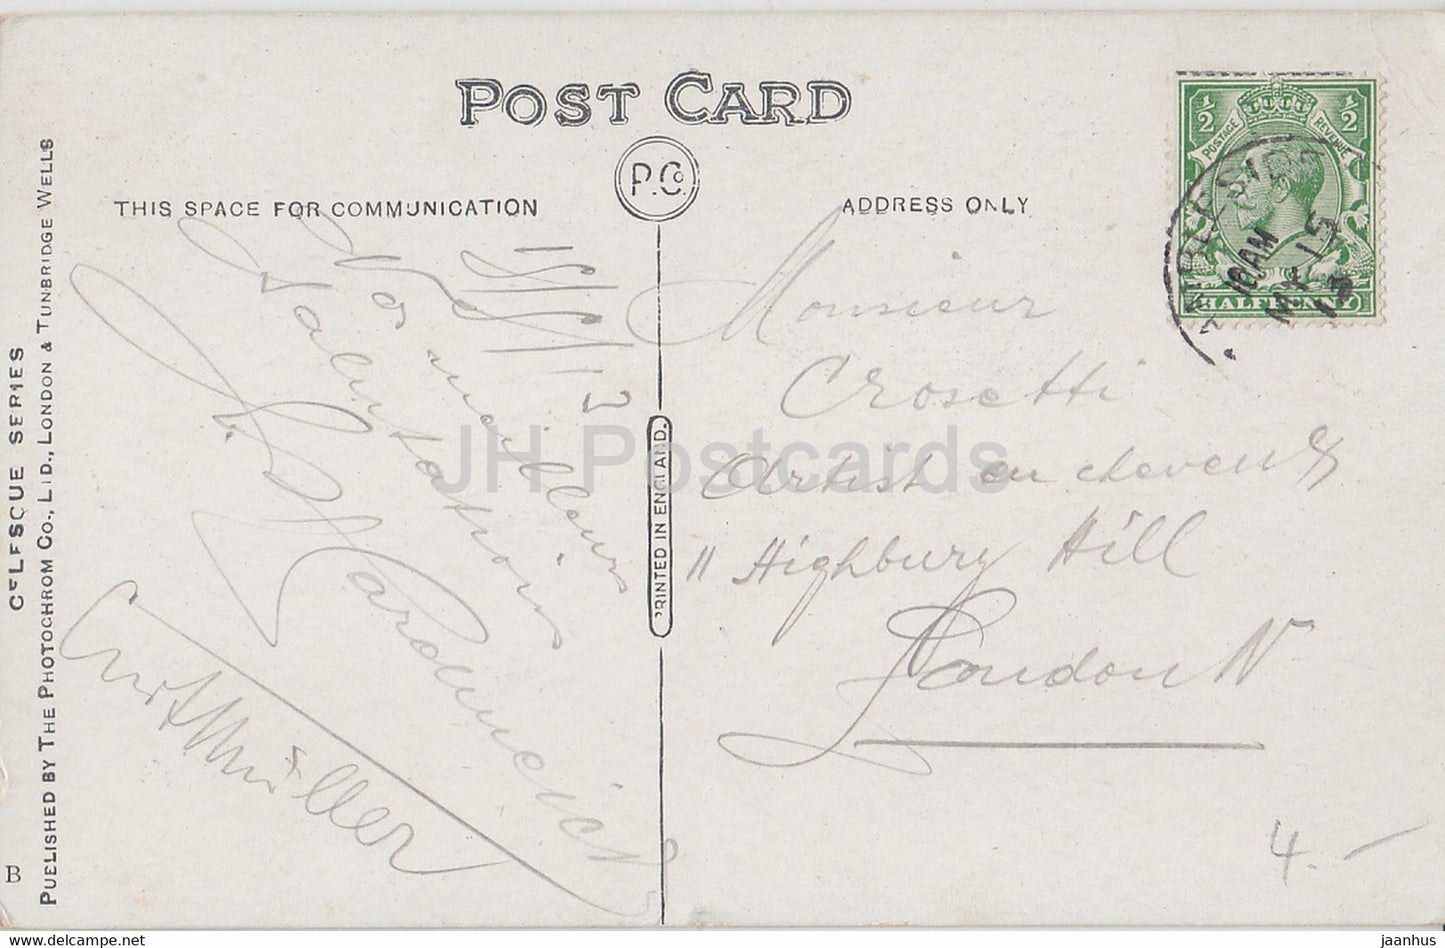 Ambleside - Old Mill - 40246 - old postcard - 1913 - England - United Kingdom - used